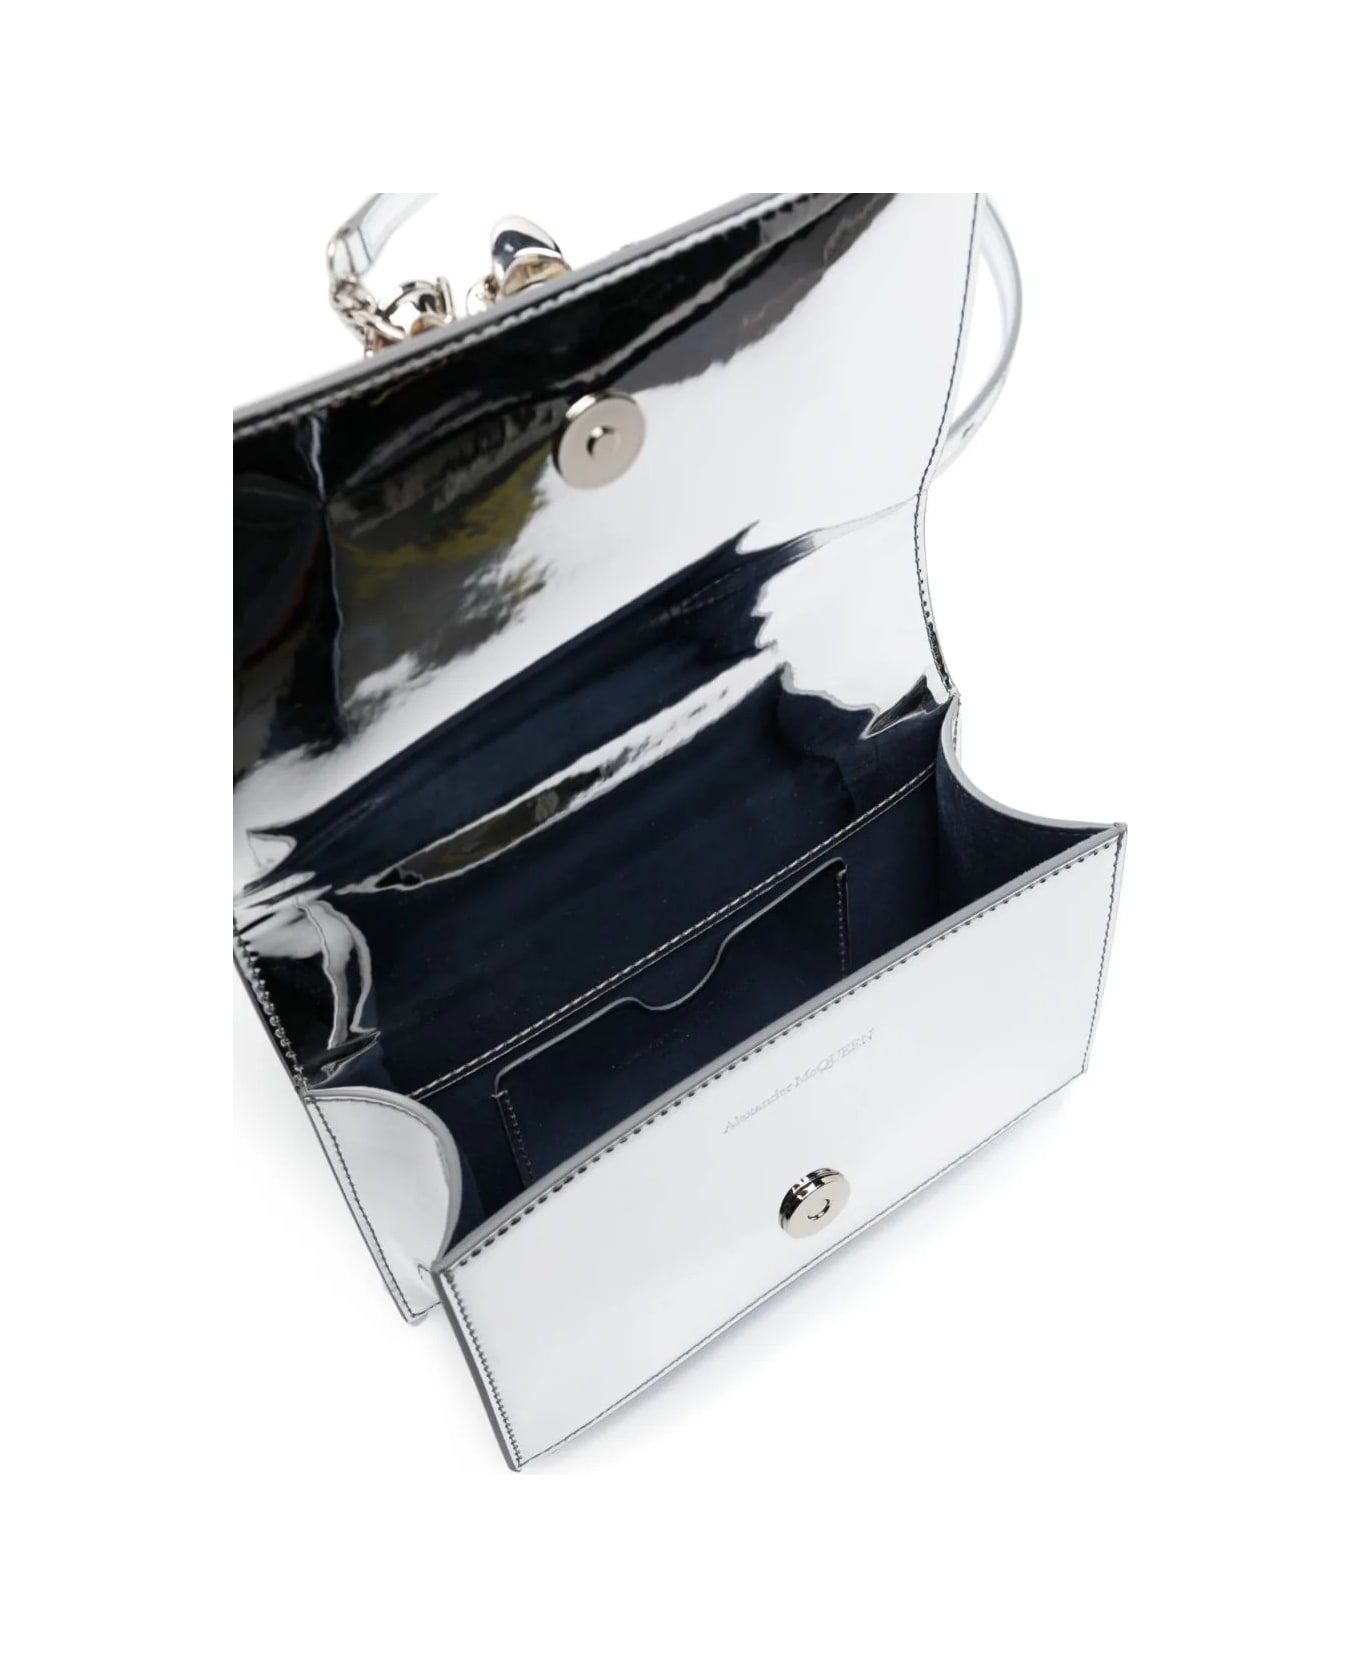 Alexander McQueen Jewelled Satchel Crossbody Bag - Silver